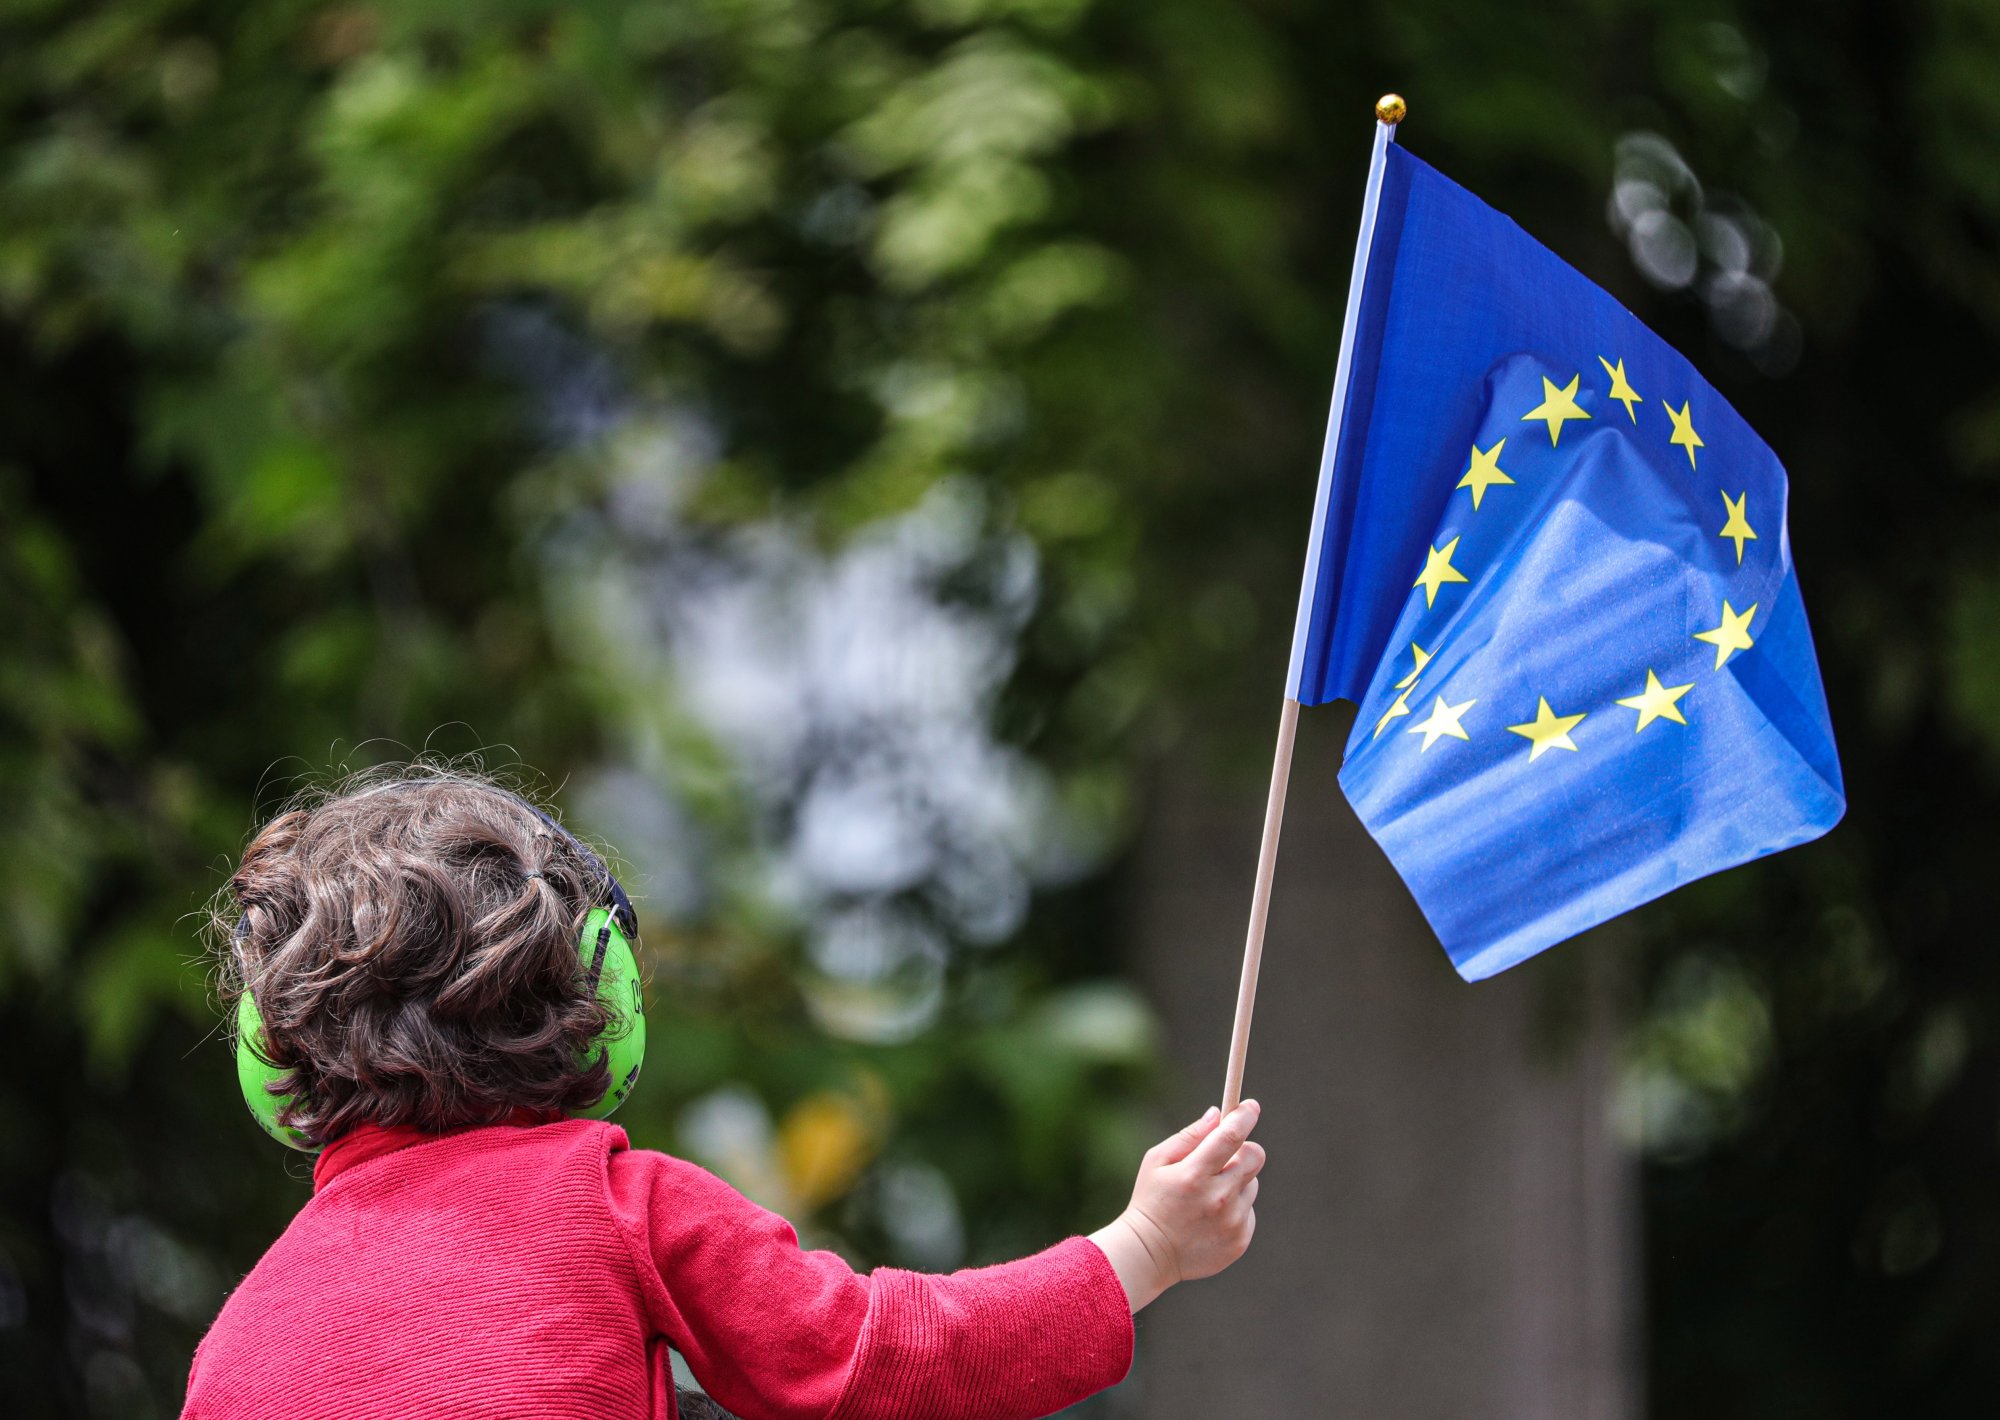 Έρευνα Pew Research Center: Μειώνεται η δημοφιλία της ΕΕ στα κράτη-μέλη